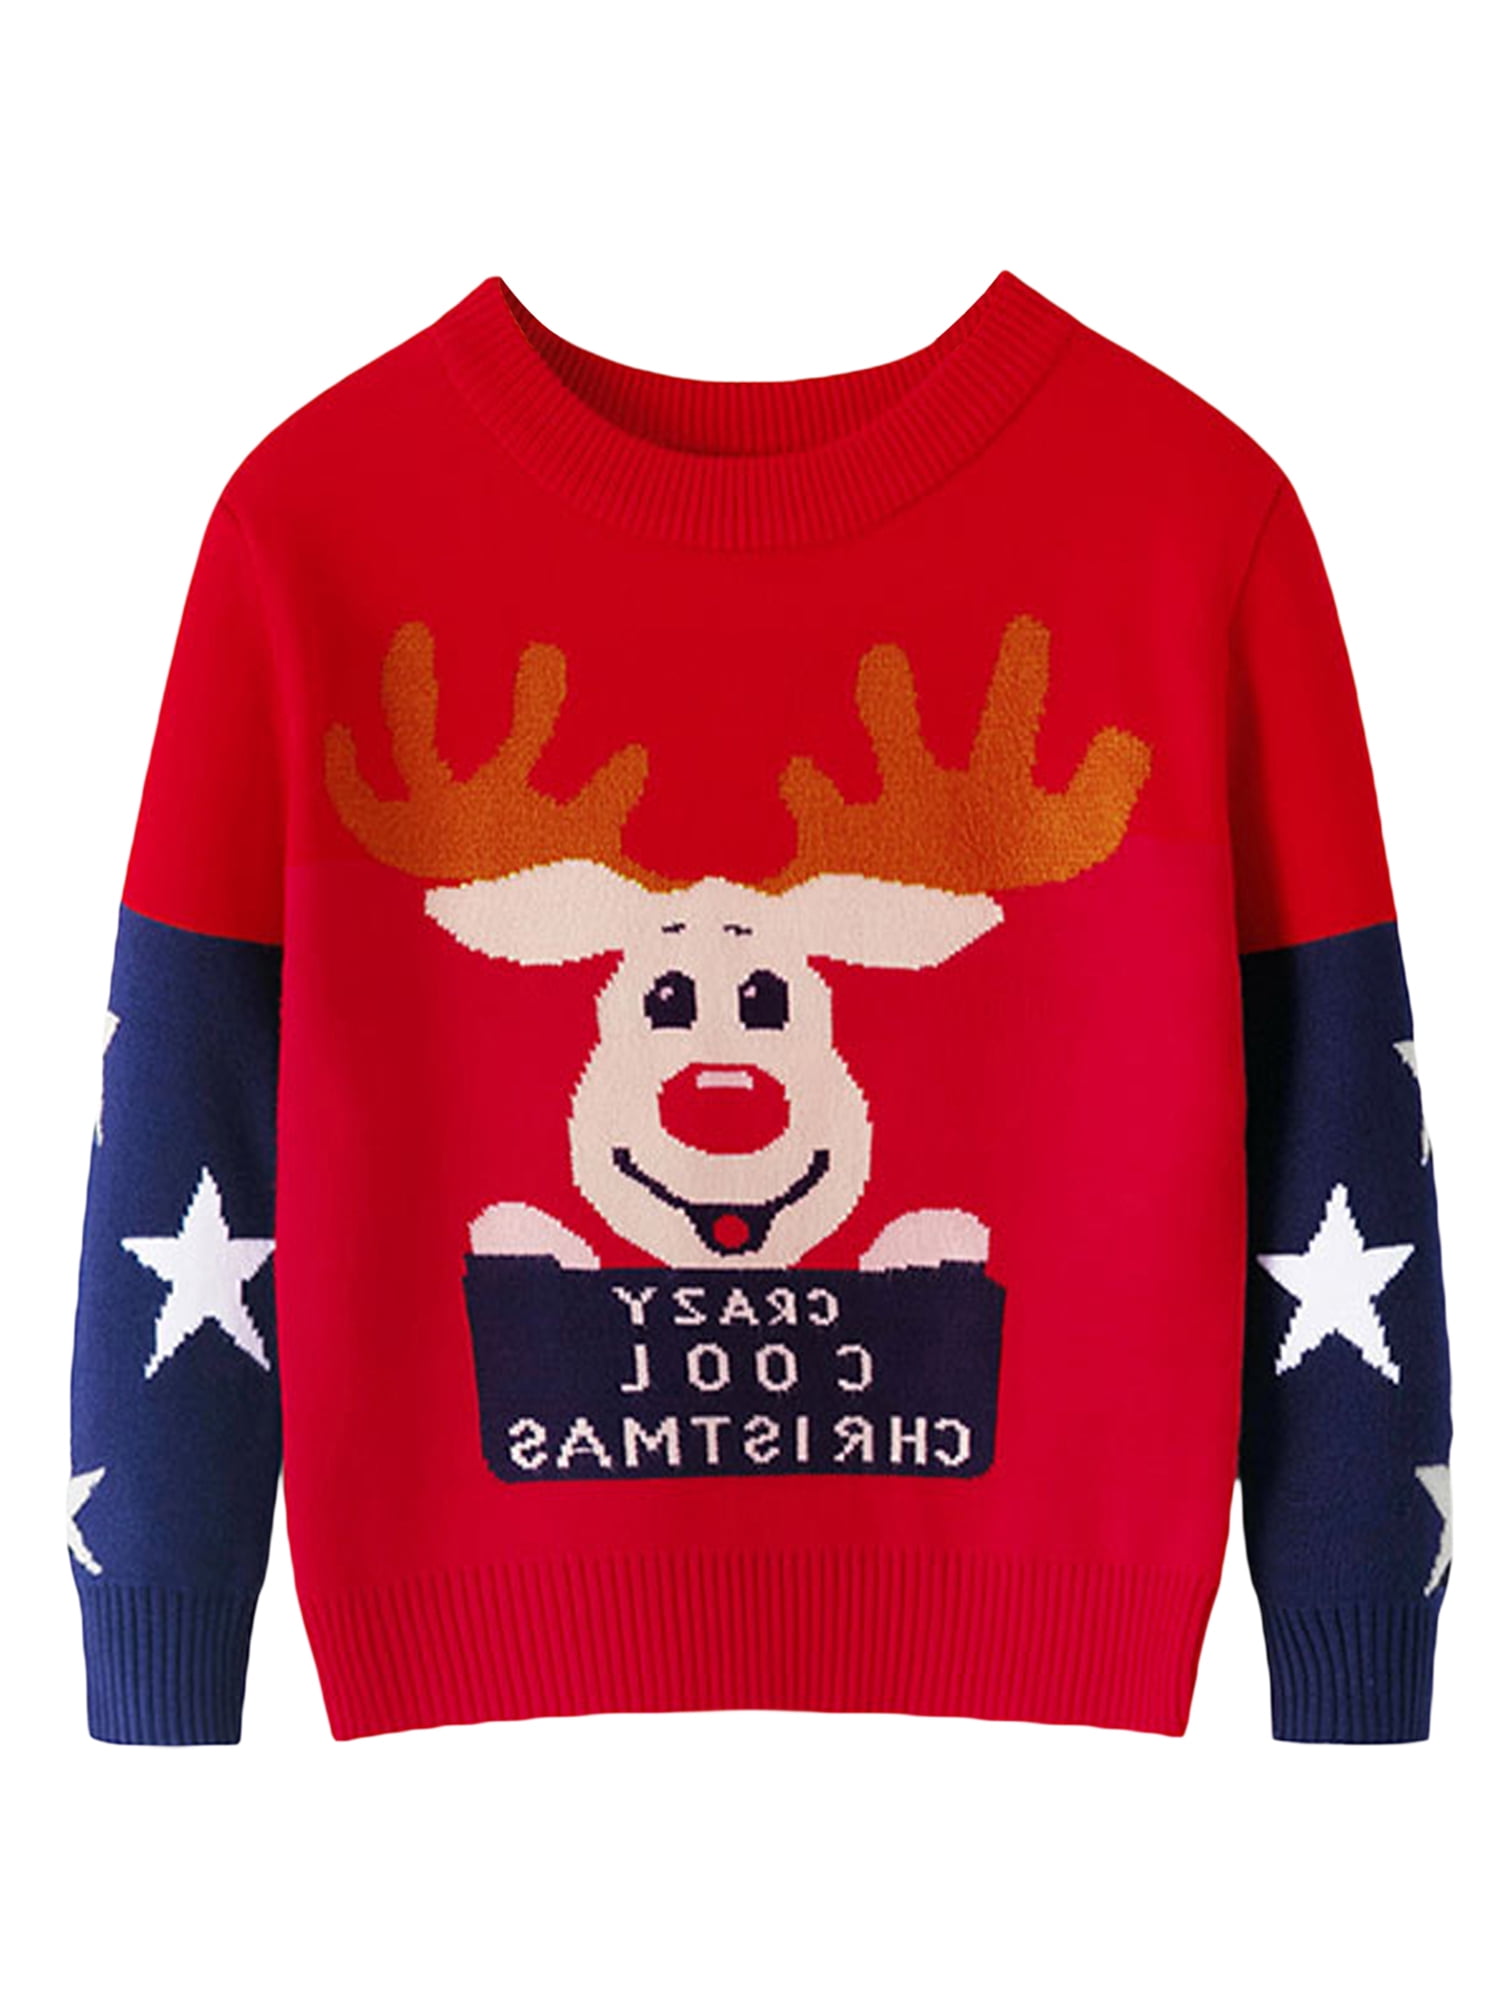 Baby Boys Girls Premium Reindeer Christmas Sweatshirt Warm Long Sleeves Pullover Sweater Tops